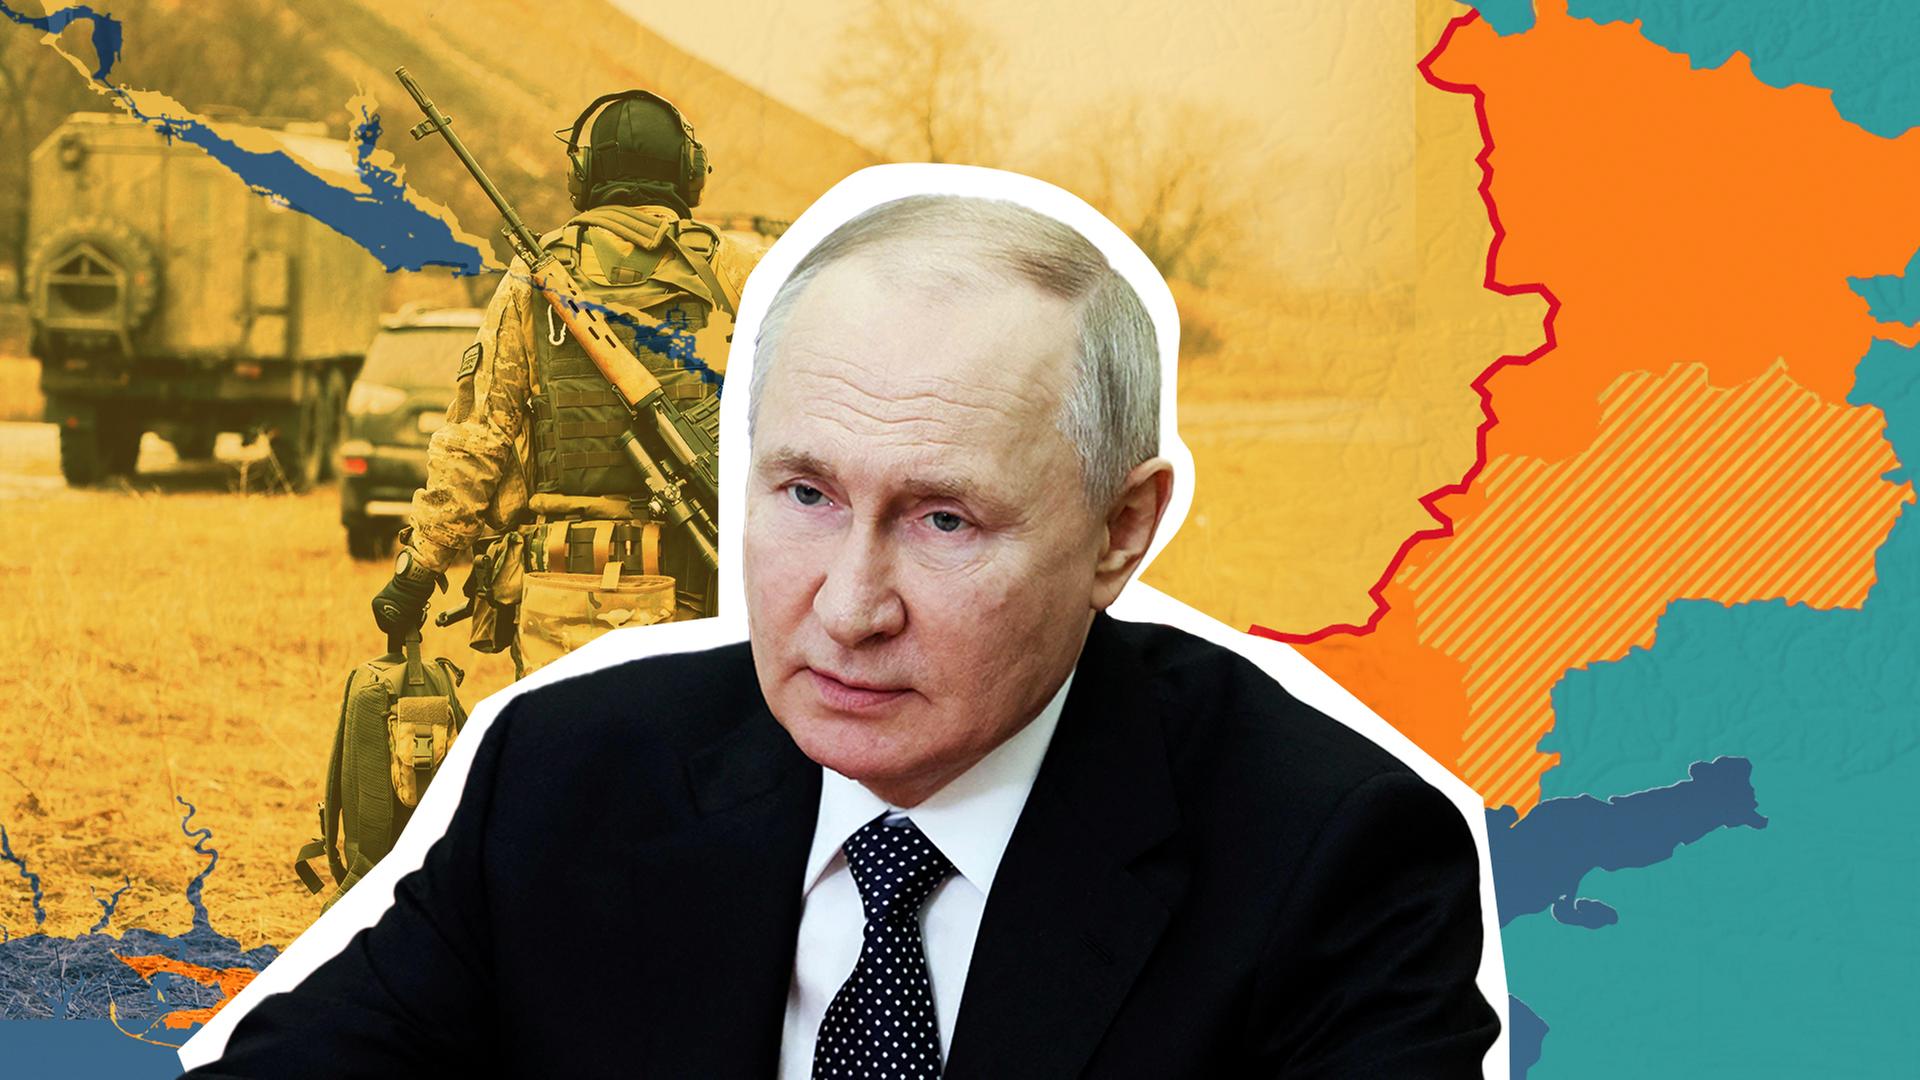 Putin vorne, im Hintergrund Soldat und Panzer/ Ukraine Karte